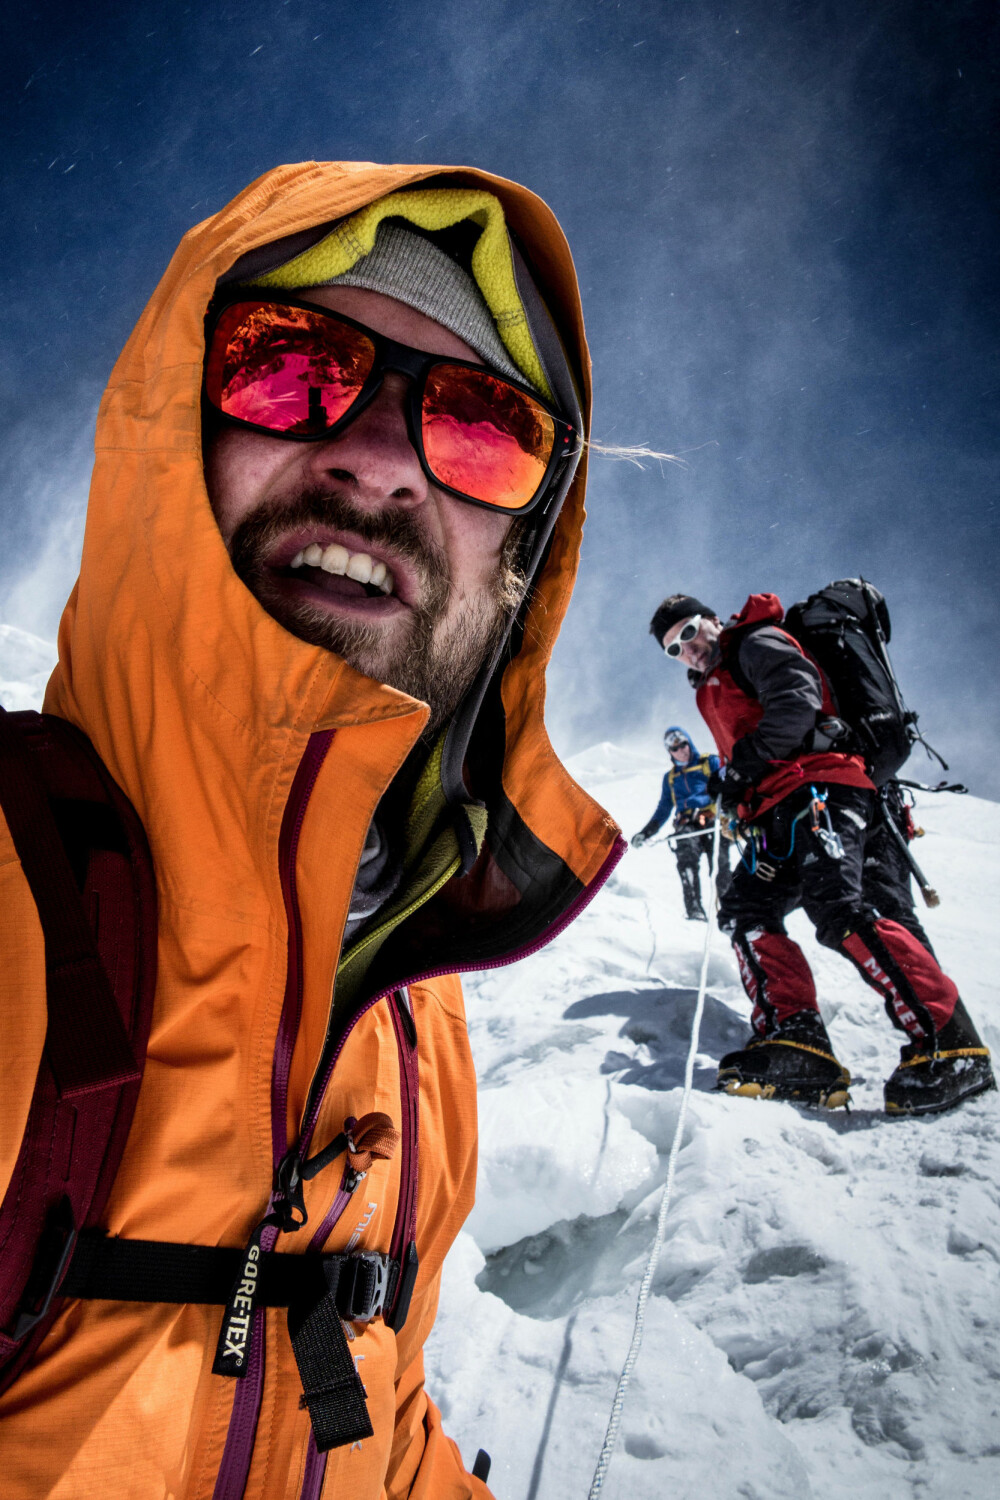 PÅ JOBB MED HARRY: Petter jobbet som filmfotograf på Mount Everest for serien «Harry's Mountain Heroes». Her under en akklimatiseringstur på Mt. Lobuche.